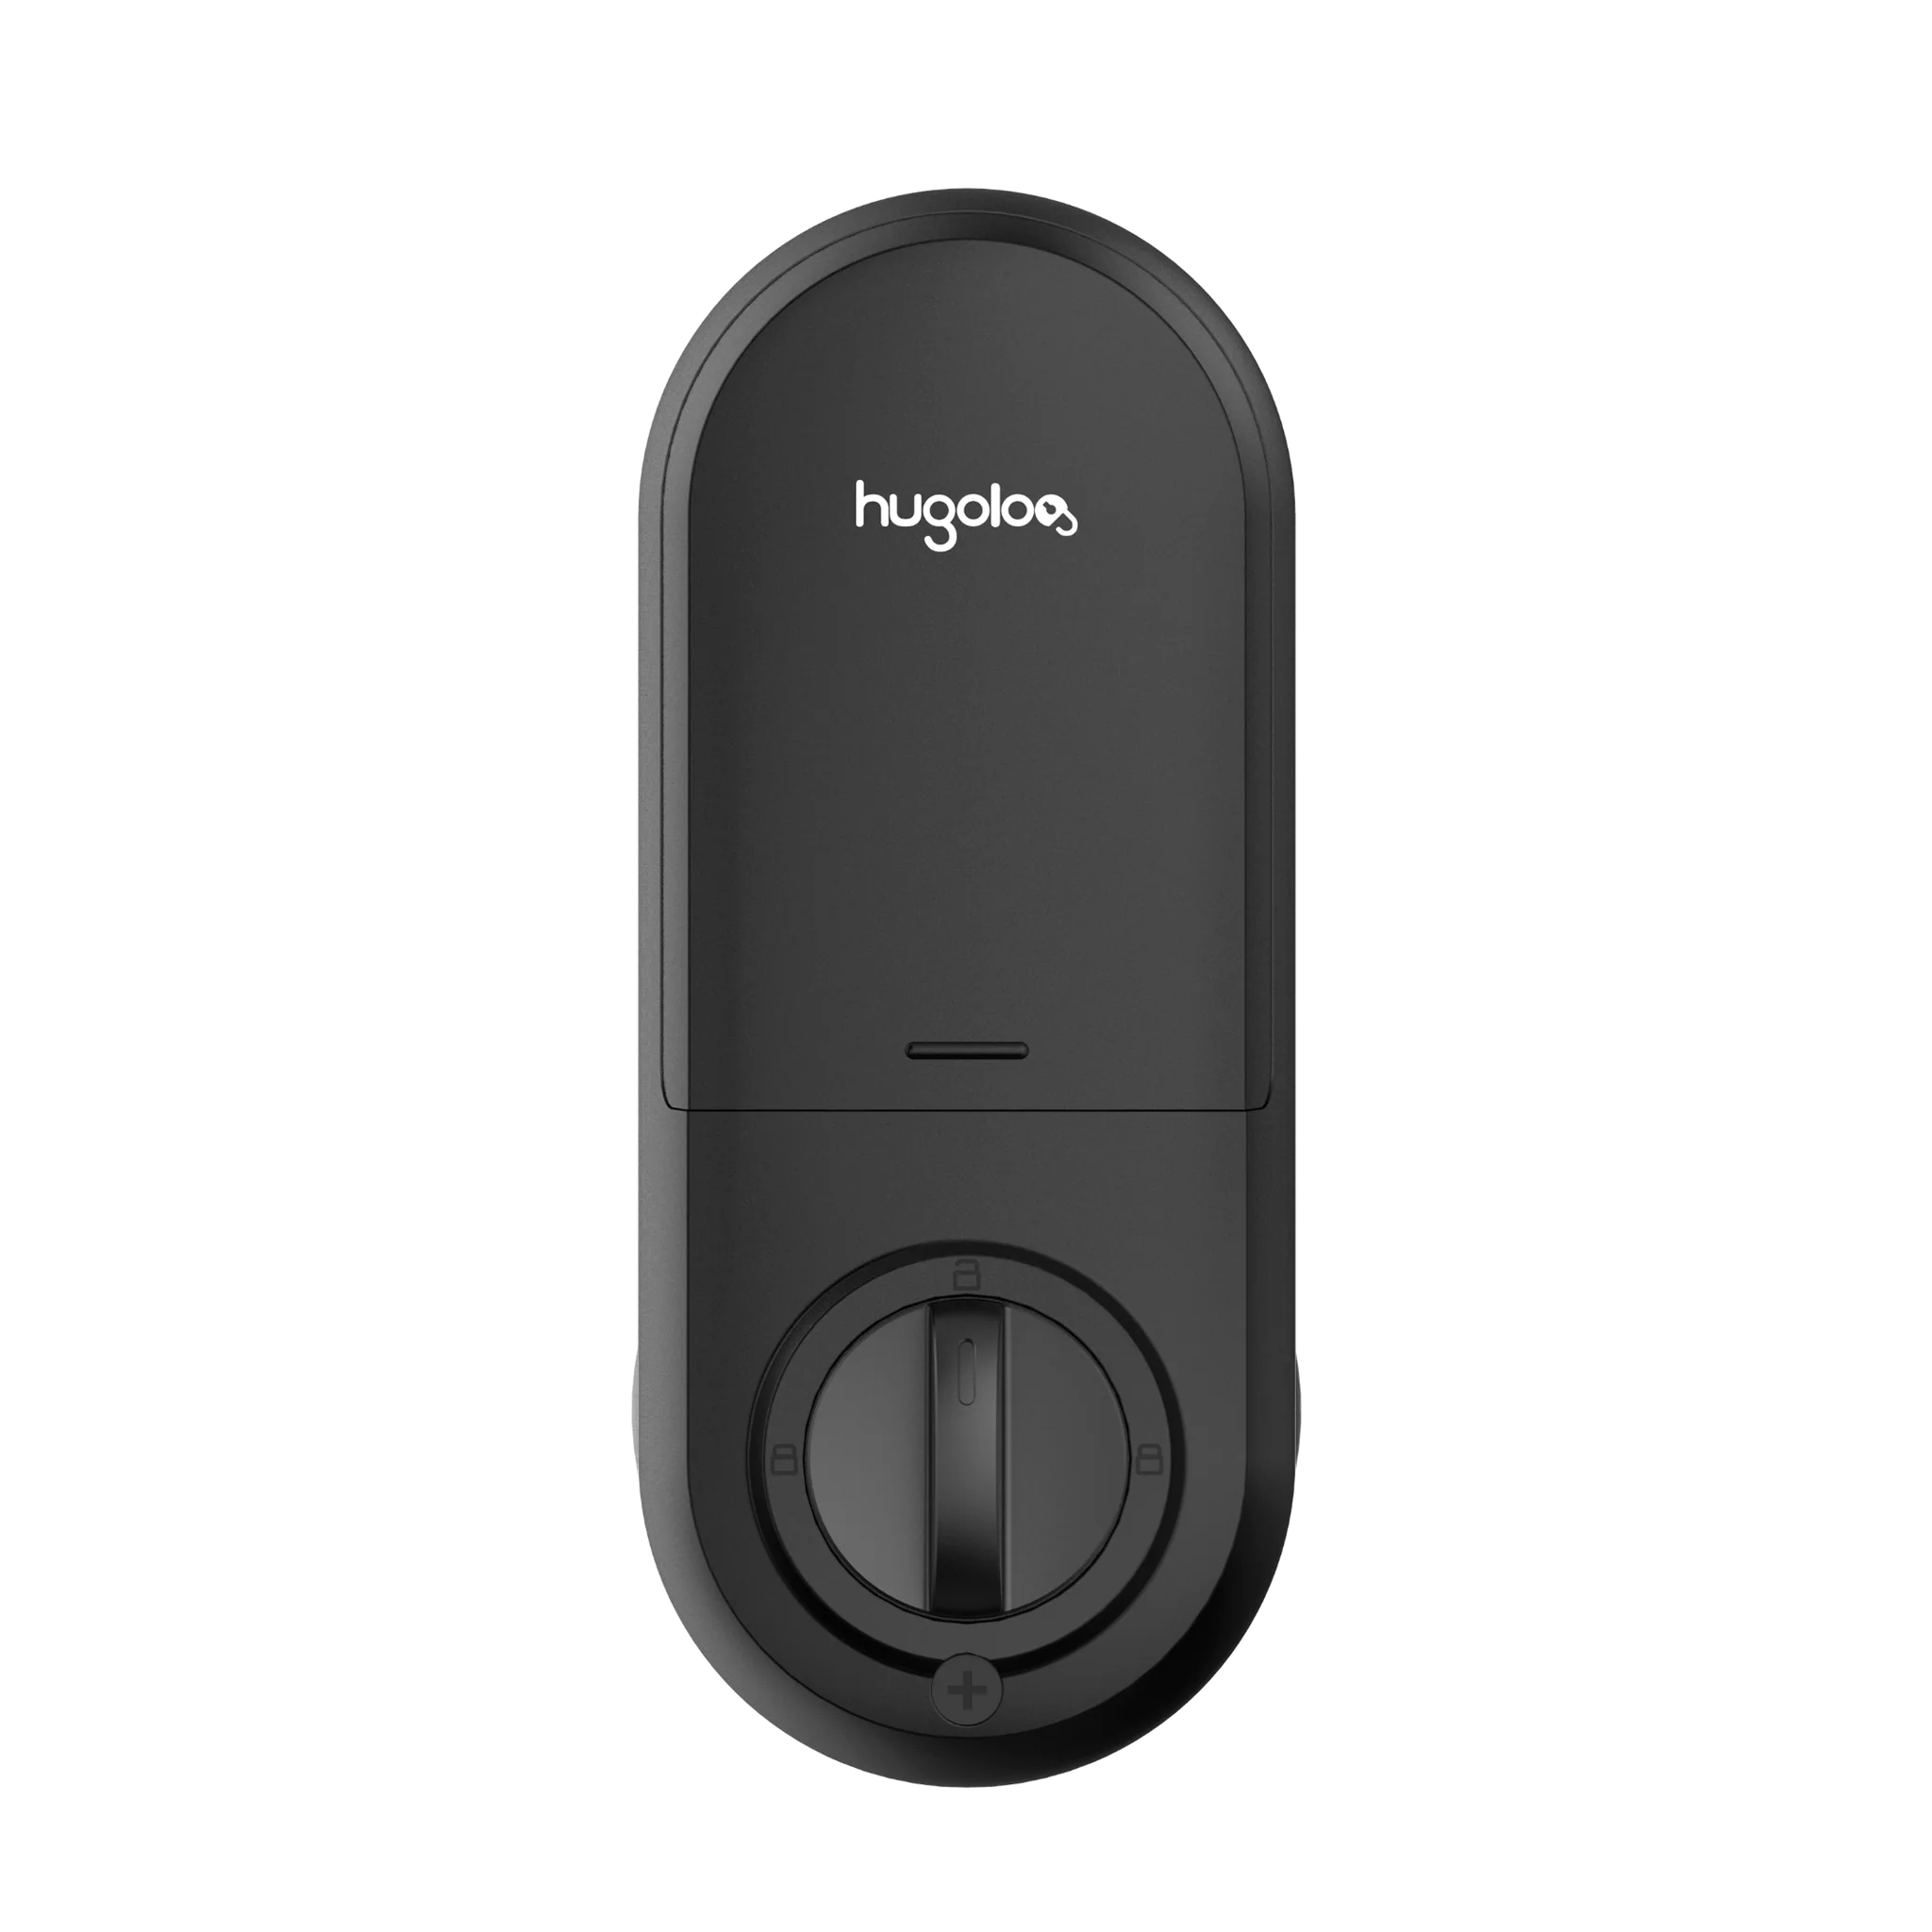 Hugolog Touchscreen Deadbolt